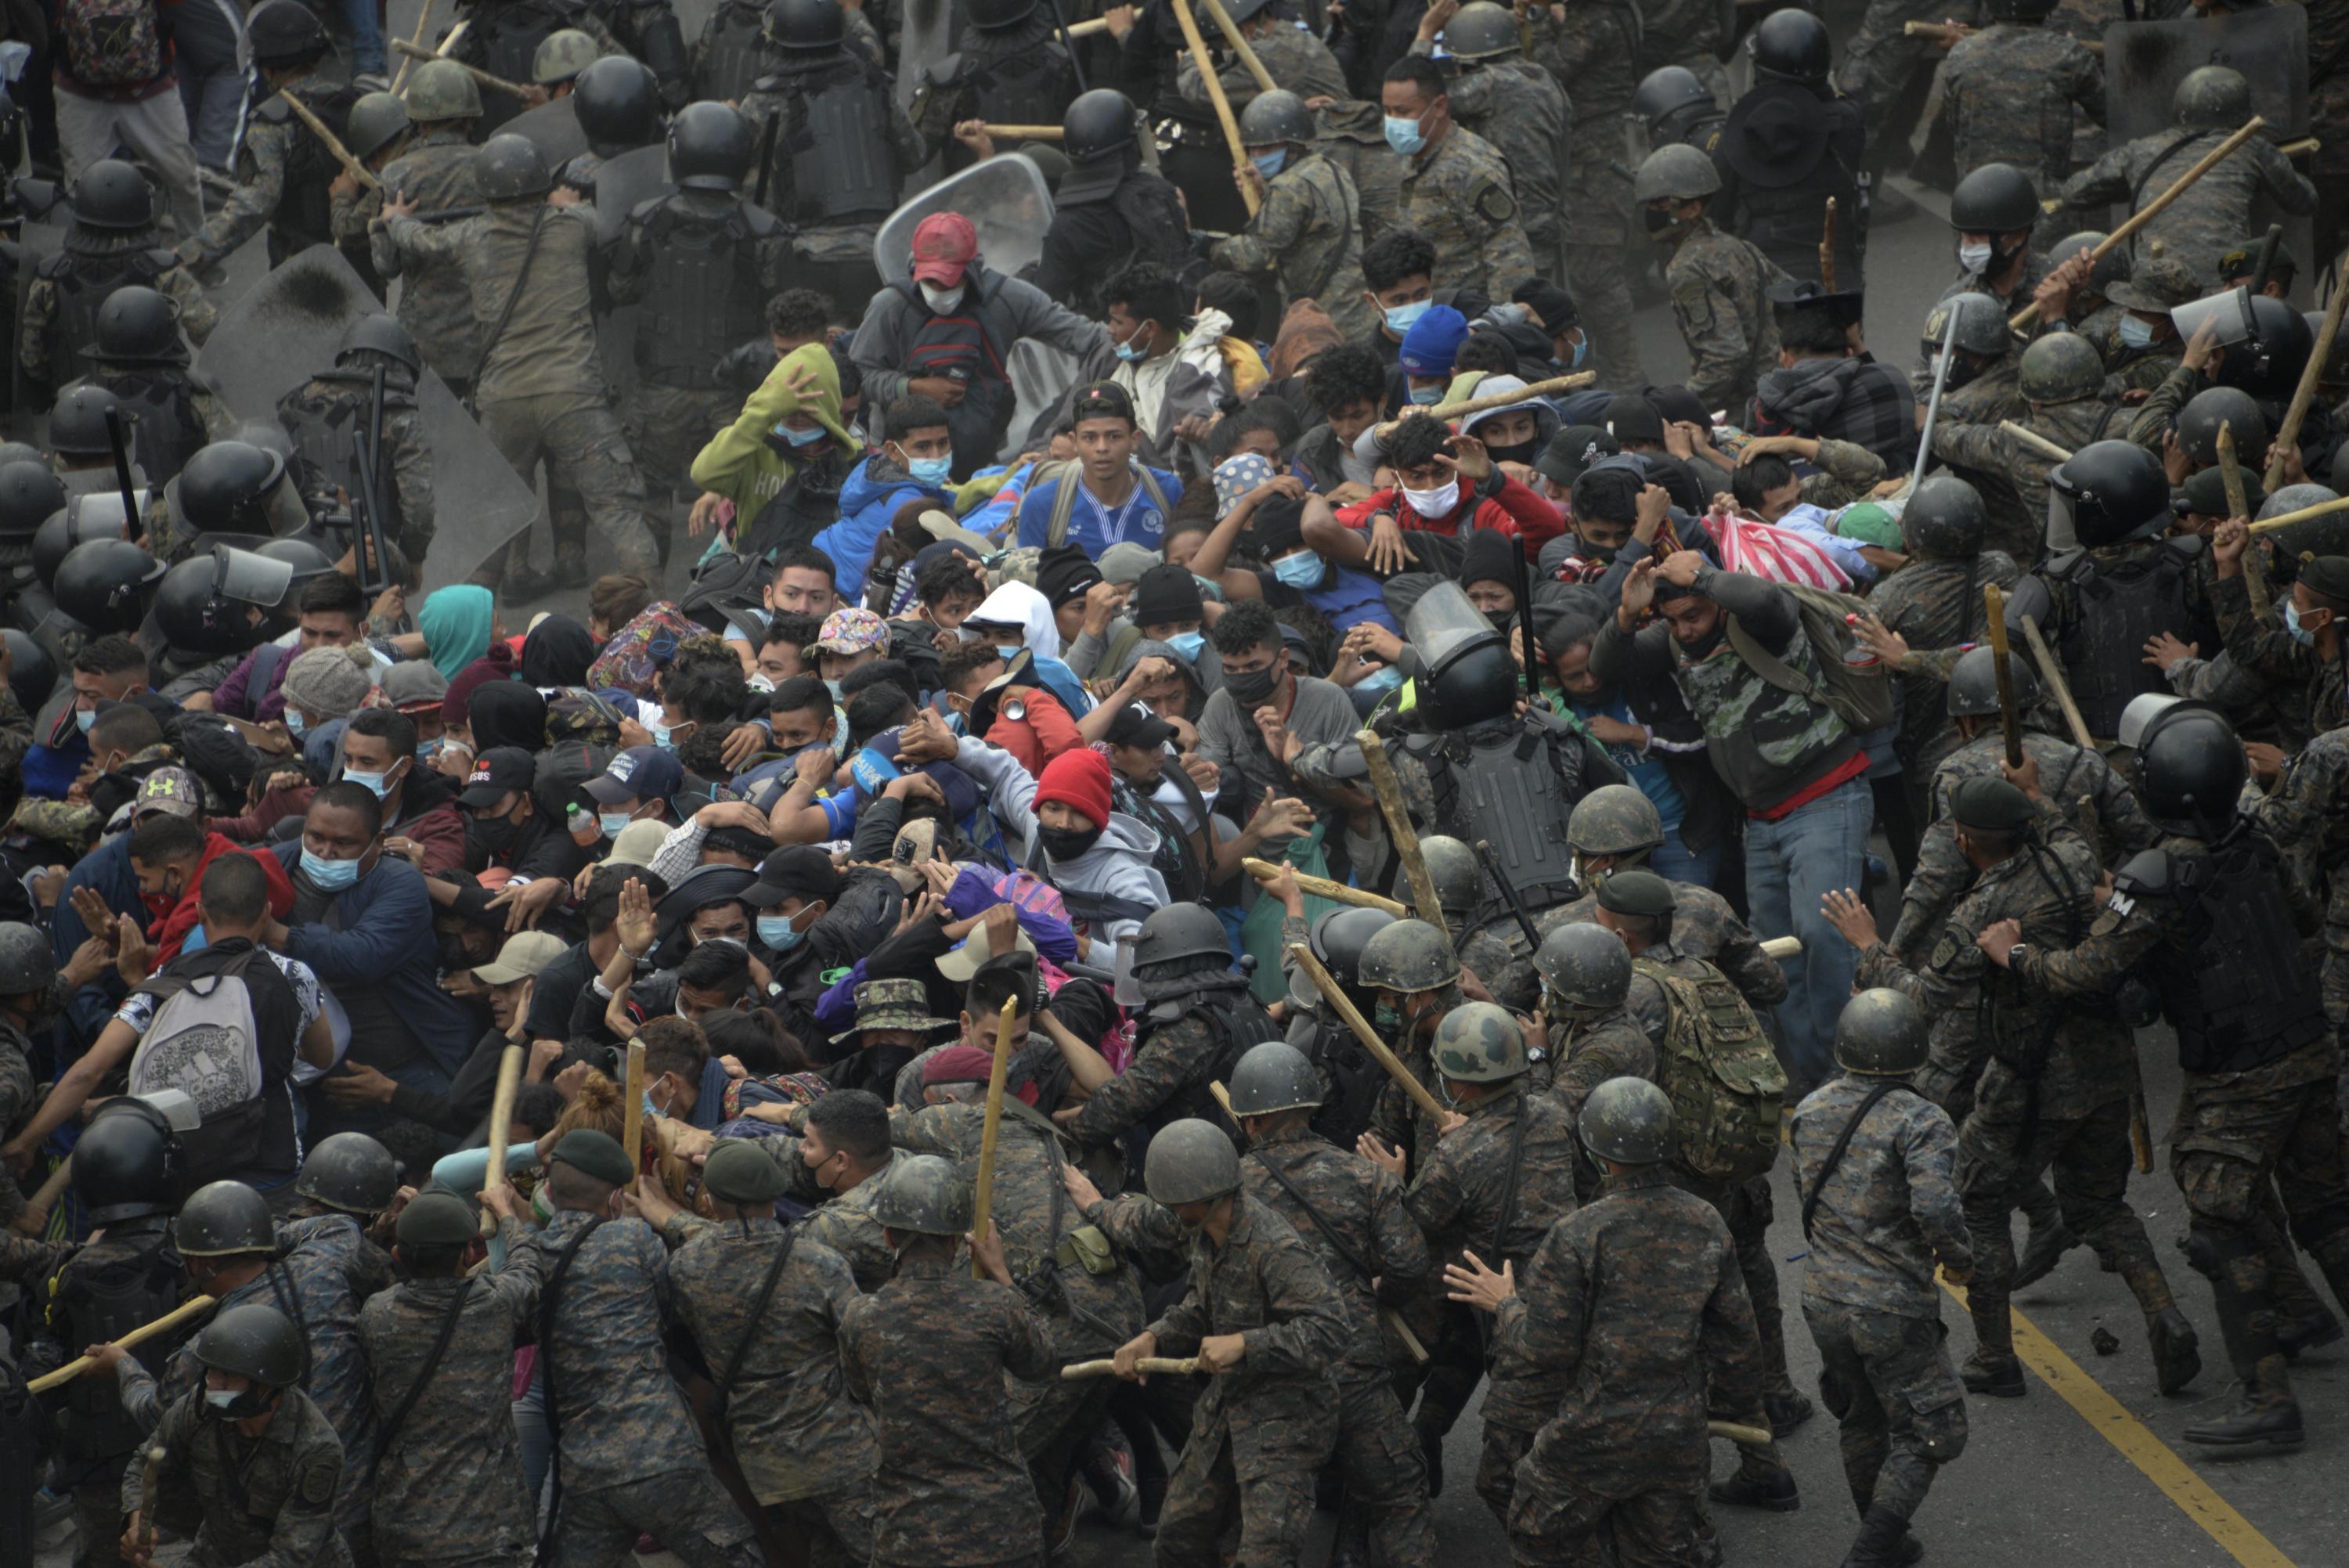 La caravana de migrantes hondureños choca con fuerzas de seguridad guatemaltecas, en Vado Hondo, Guatemala, el 17 de enero de 2021. La policía usó gas lacrimógeno para tratar de dispersar a la caravana. Foto: Johan Ordóñez / AFP.